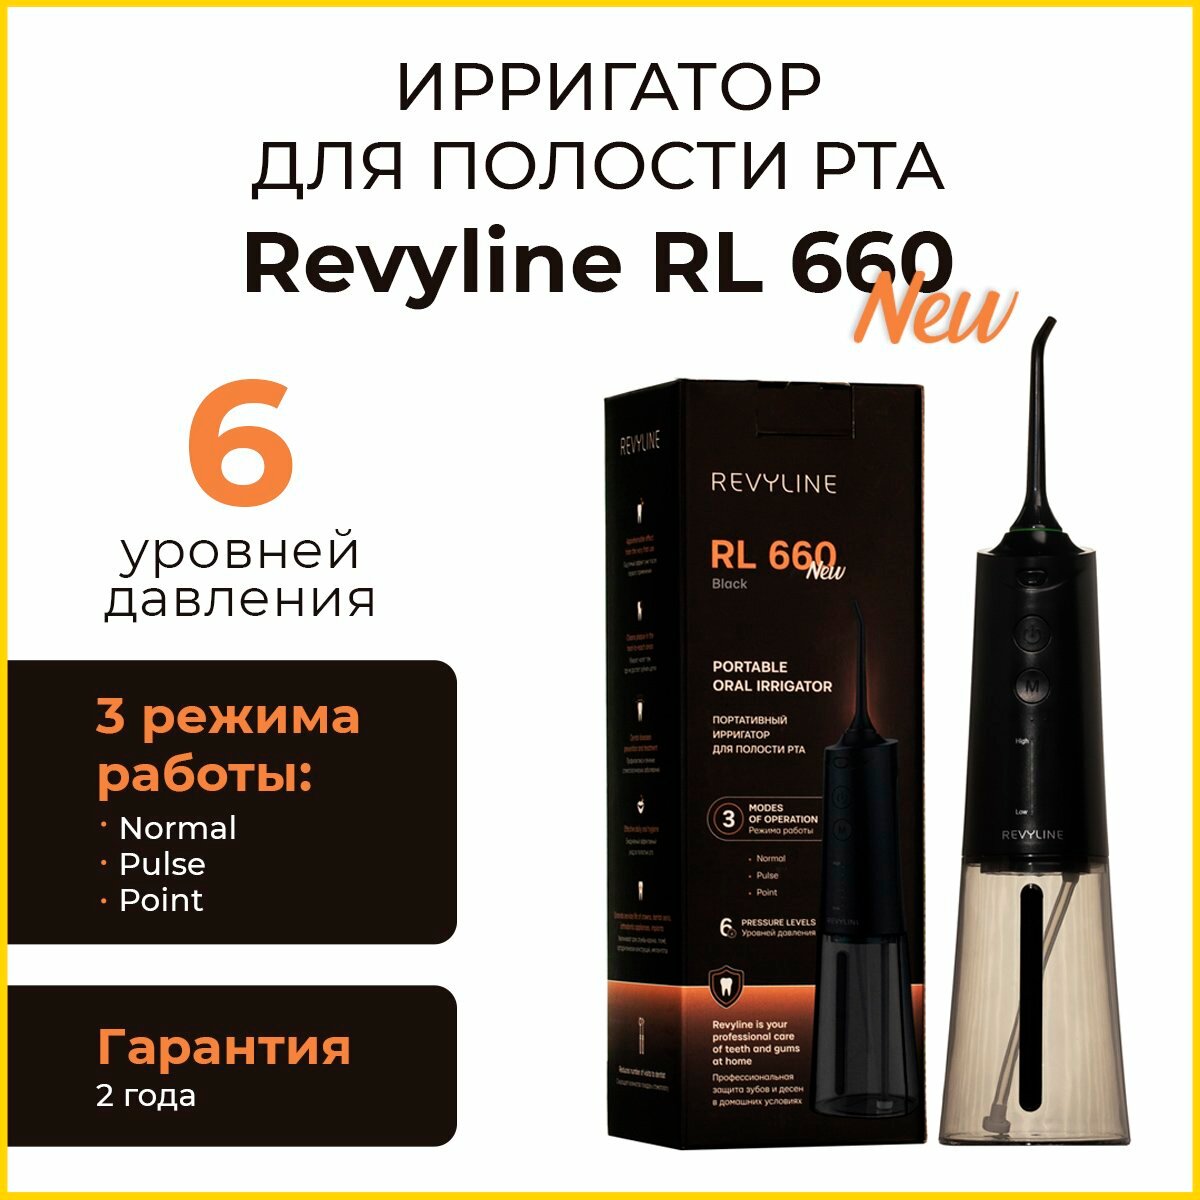 Revyline RL 660 NEW Black Ирригатор портативный